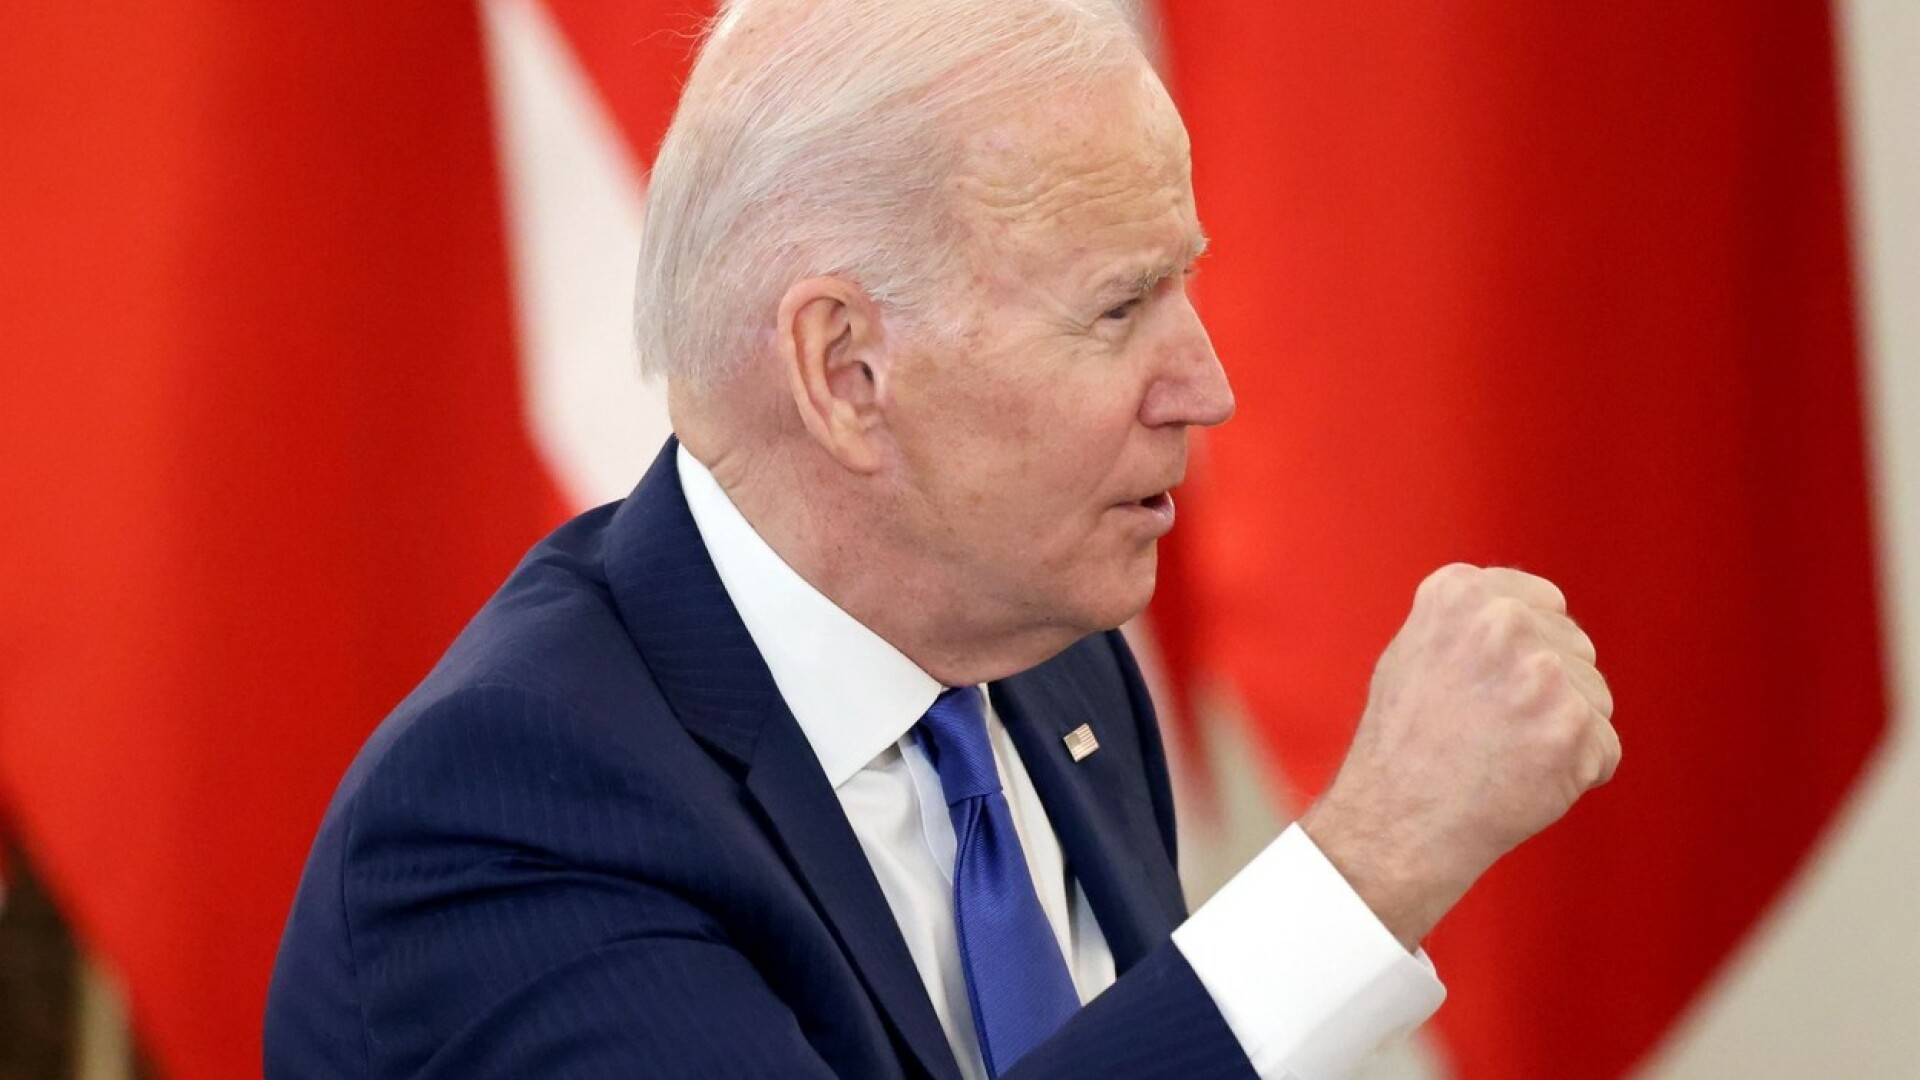 Joe Biden l-a numit pe Putin ”măcelar” în timpul întâlnirii sale cu refugiații ucraineni